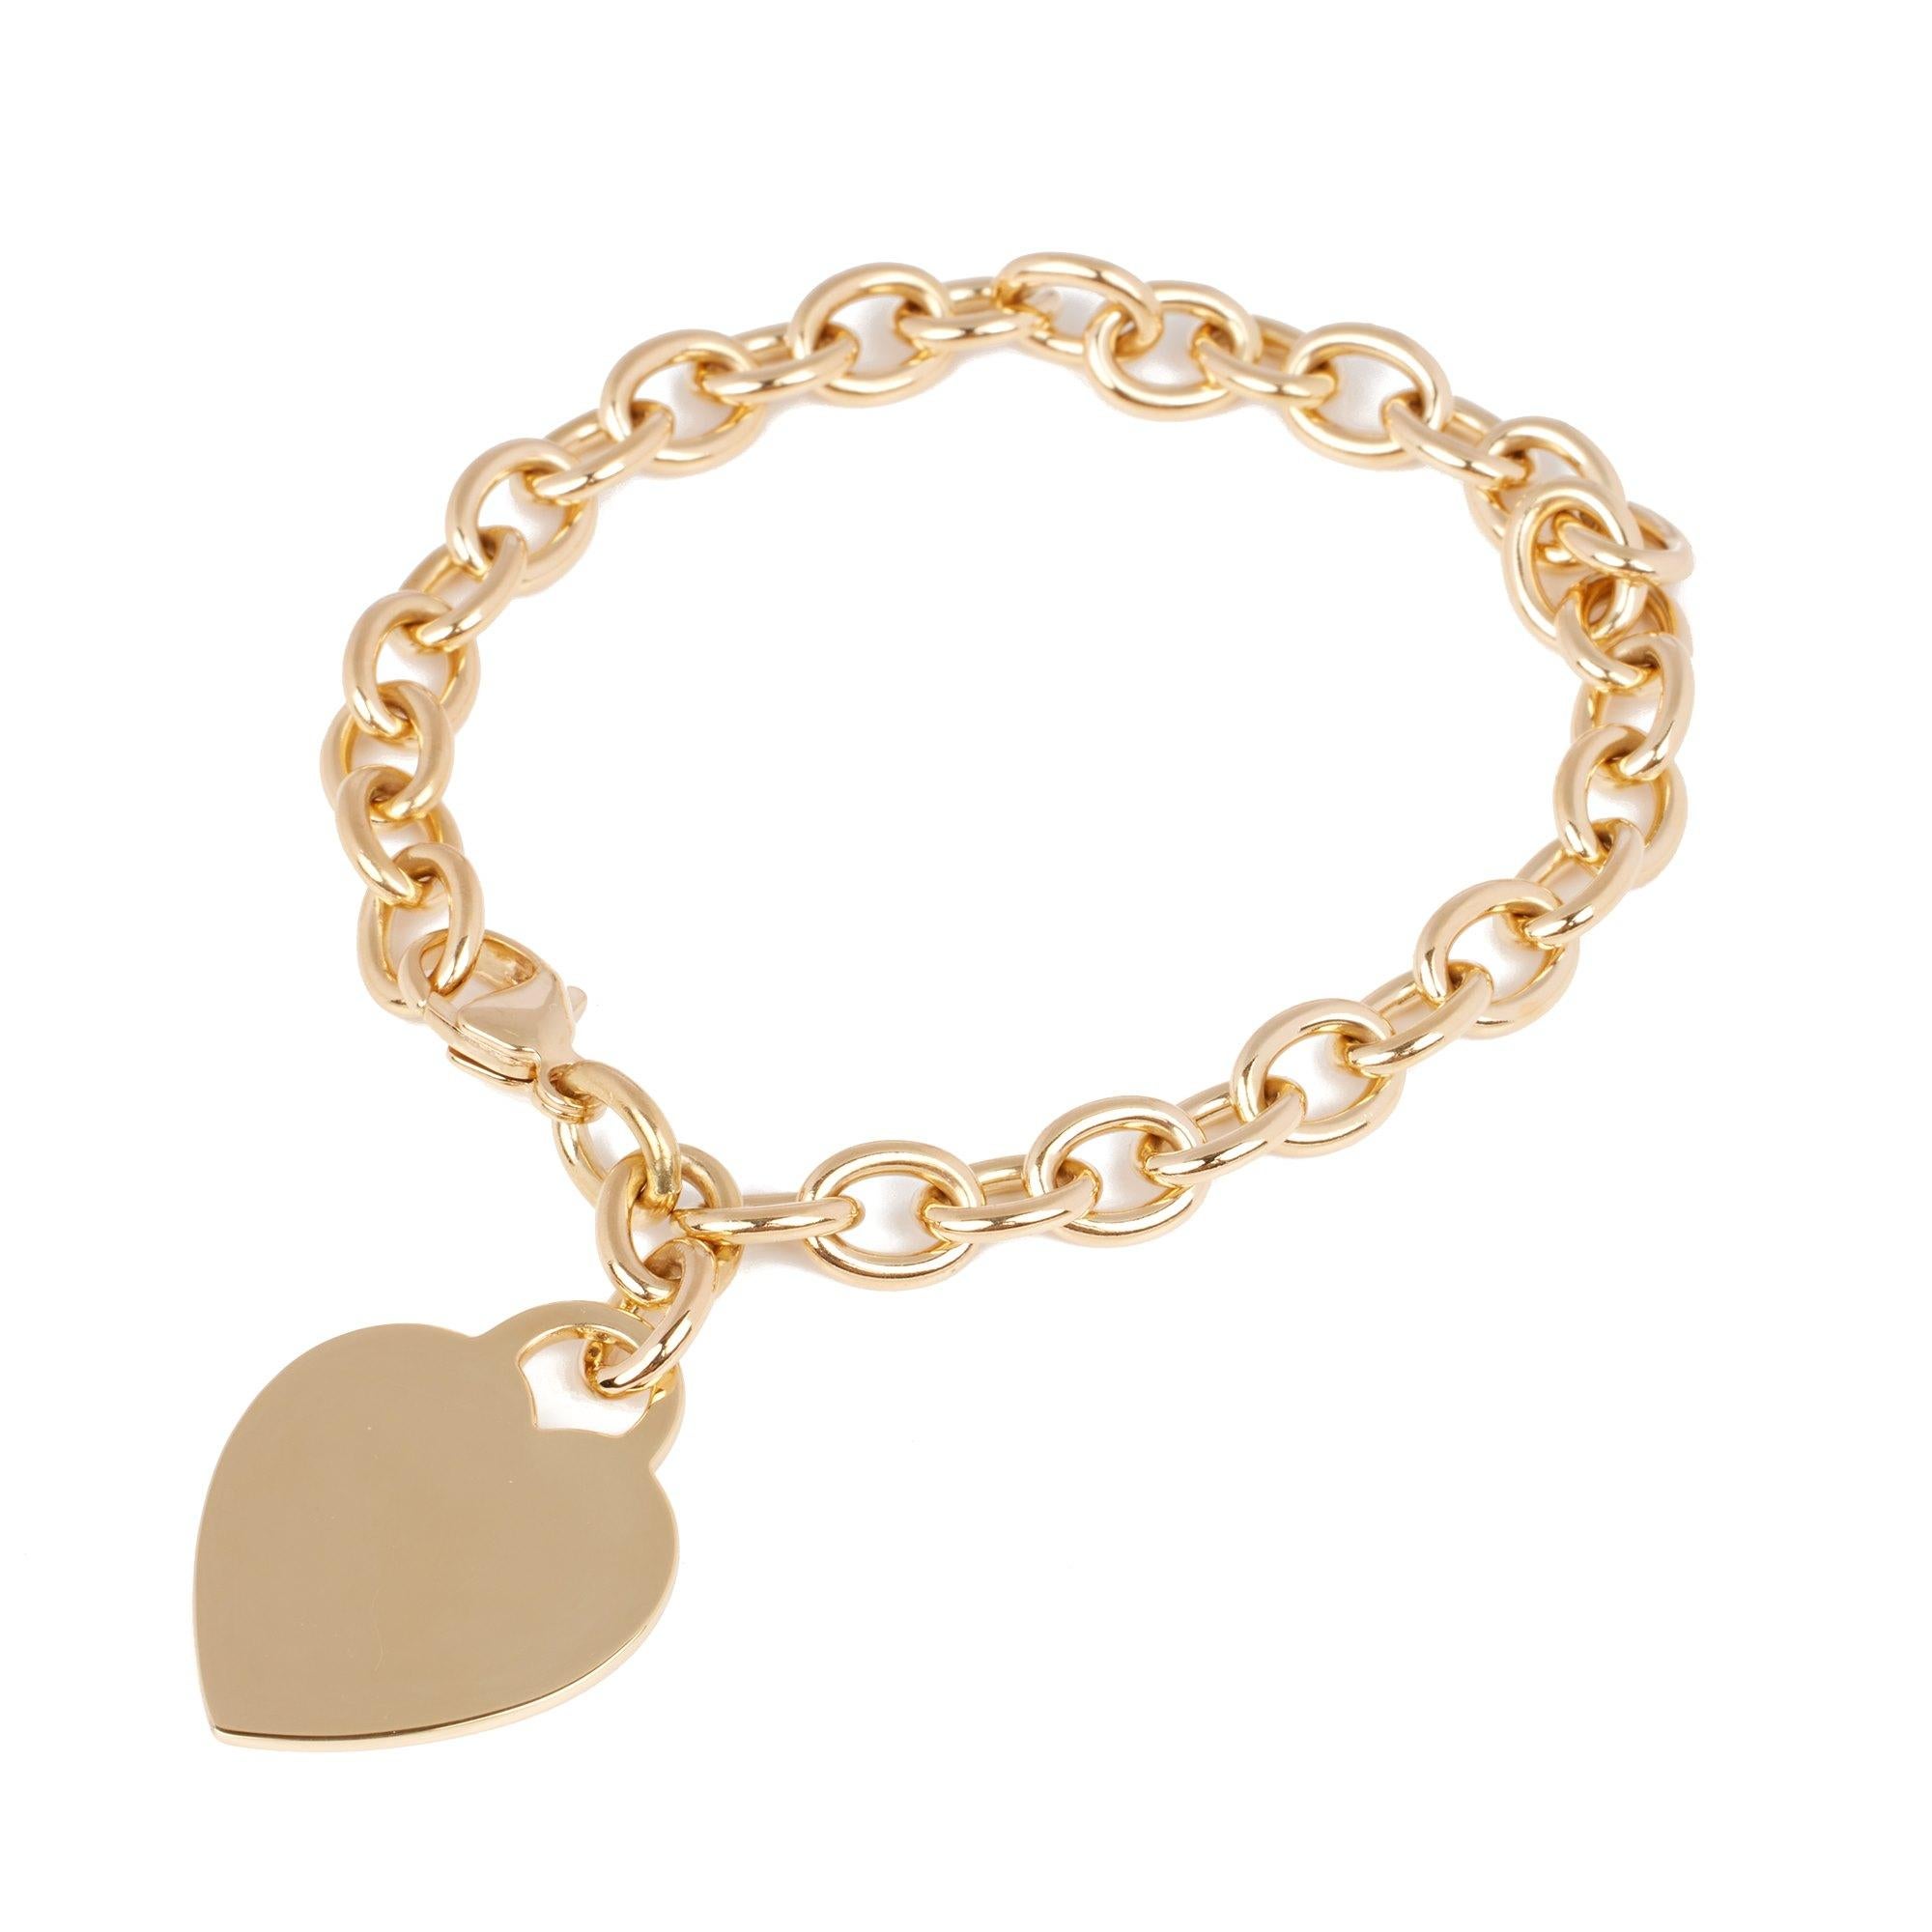 Contemporary Tiffany & Co. Heart Tag Charm Bracelet